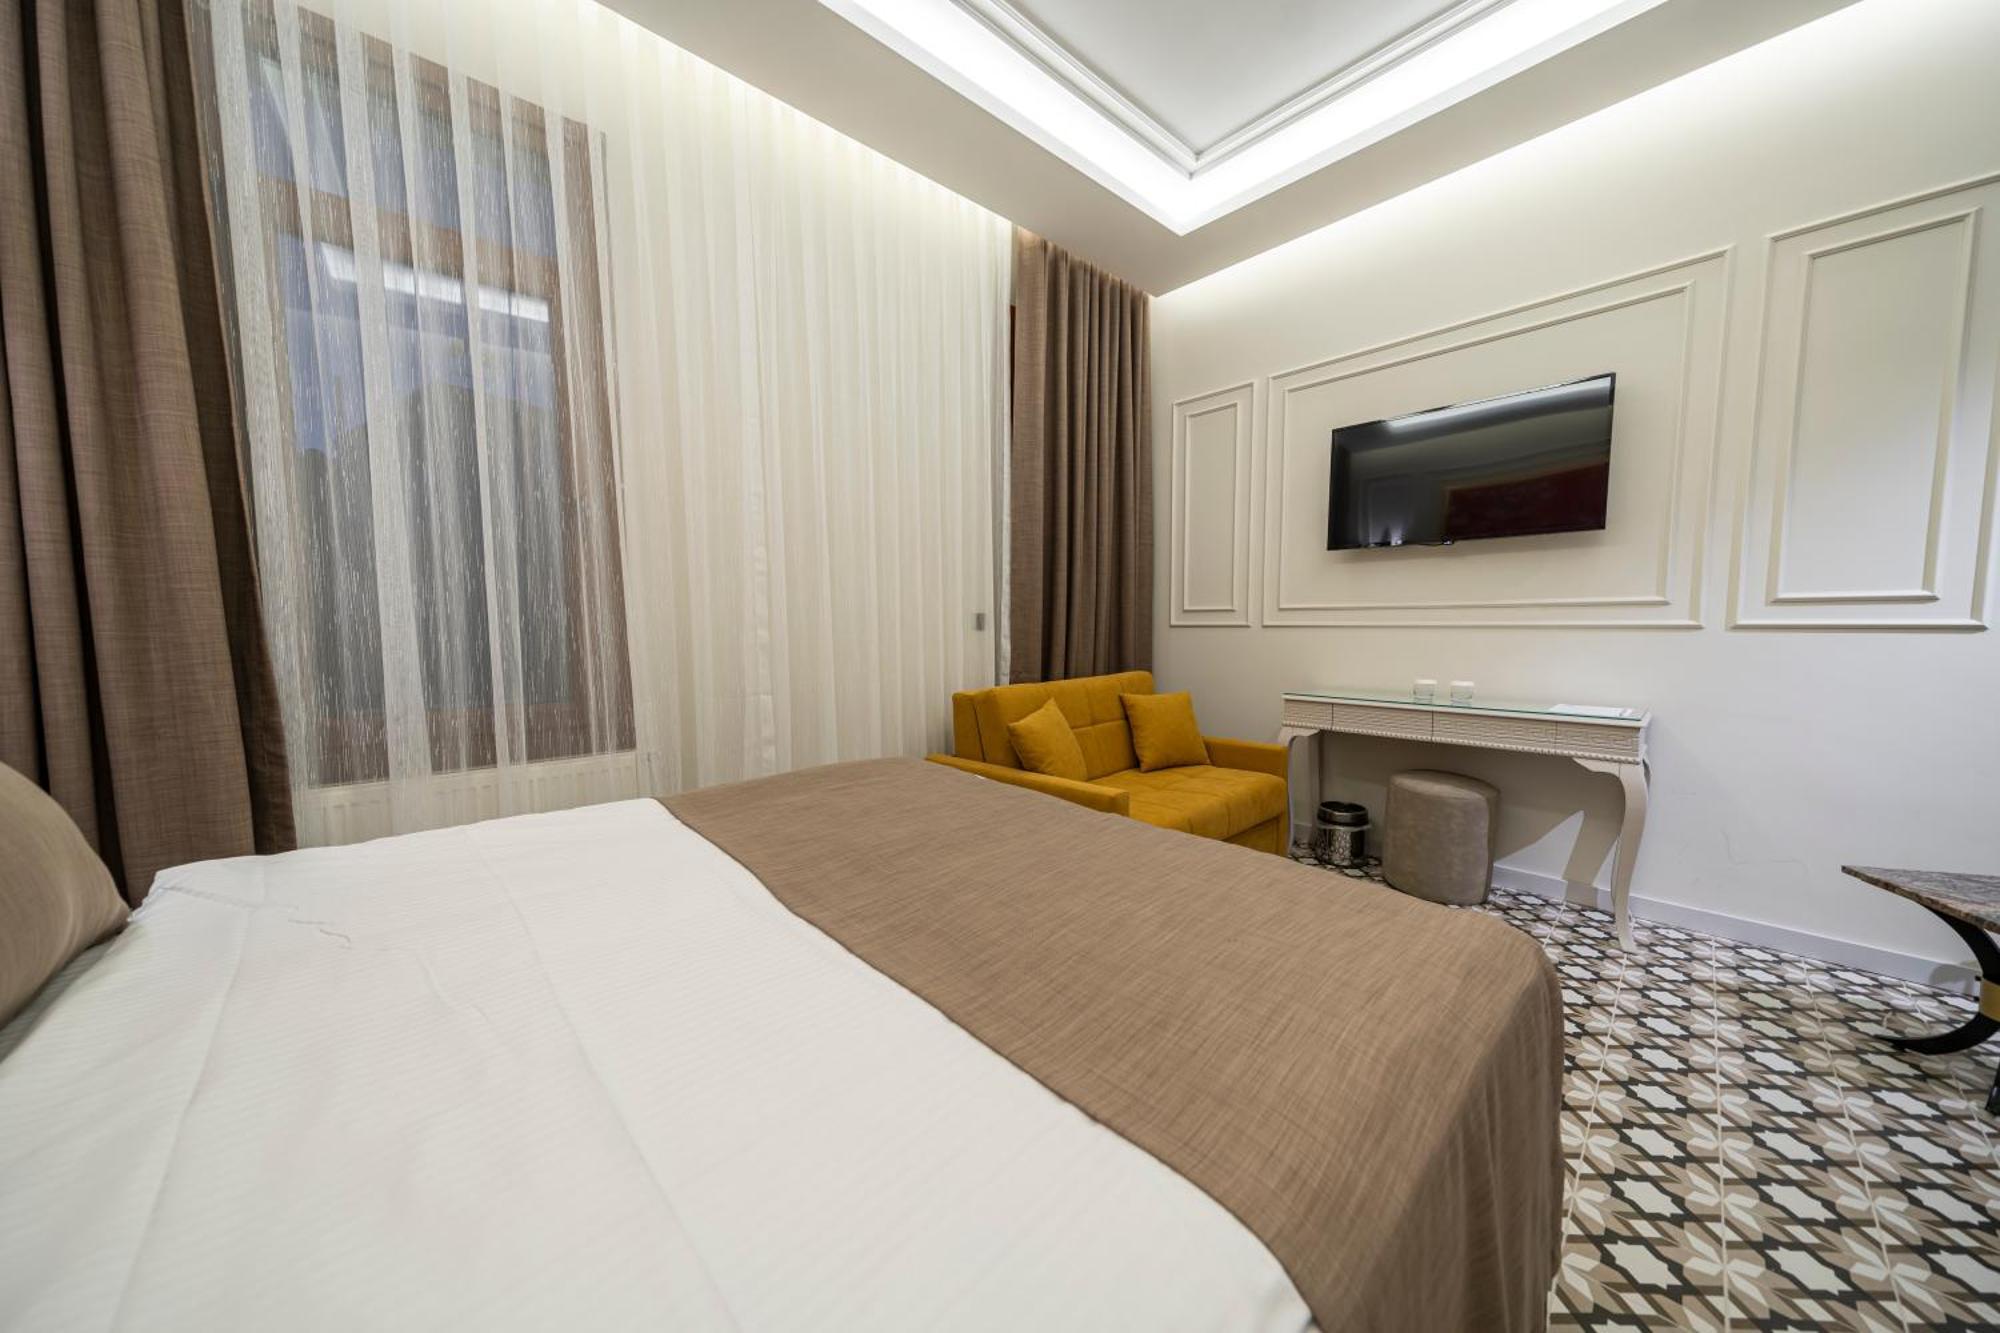 Pera Luna Premium Hotel 伊斯坦布尔 外观 照片